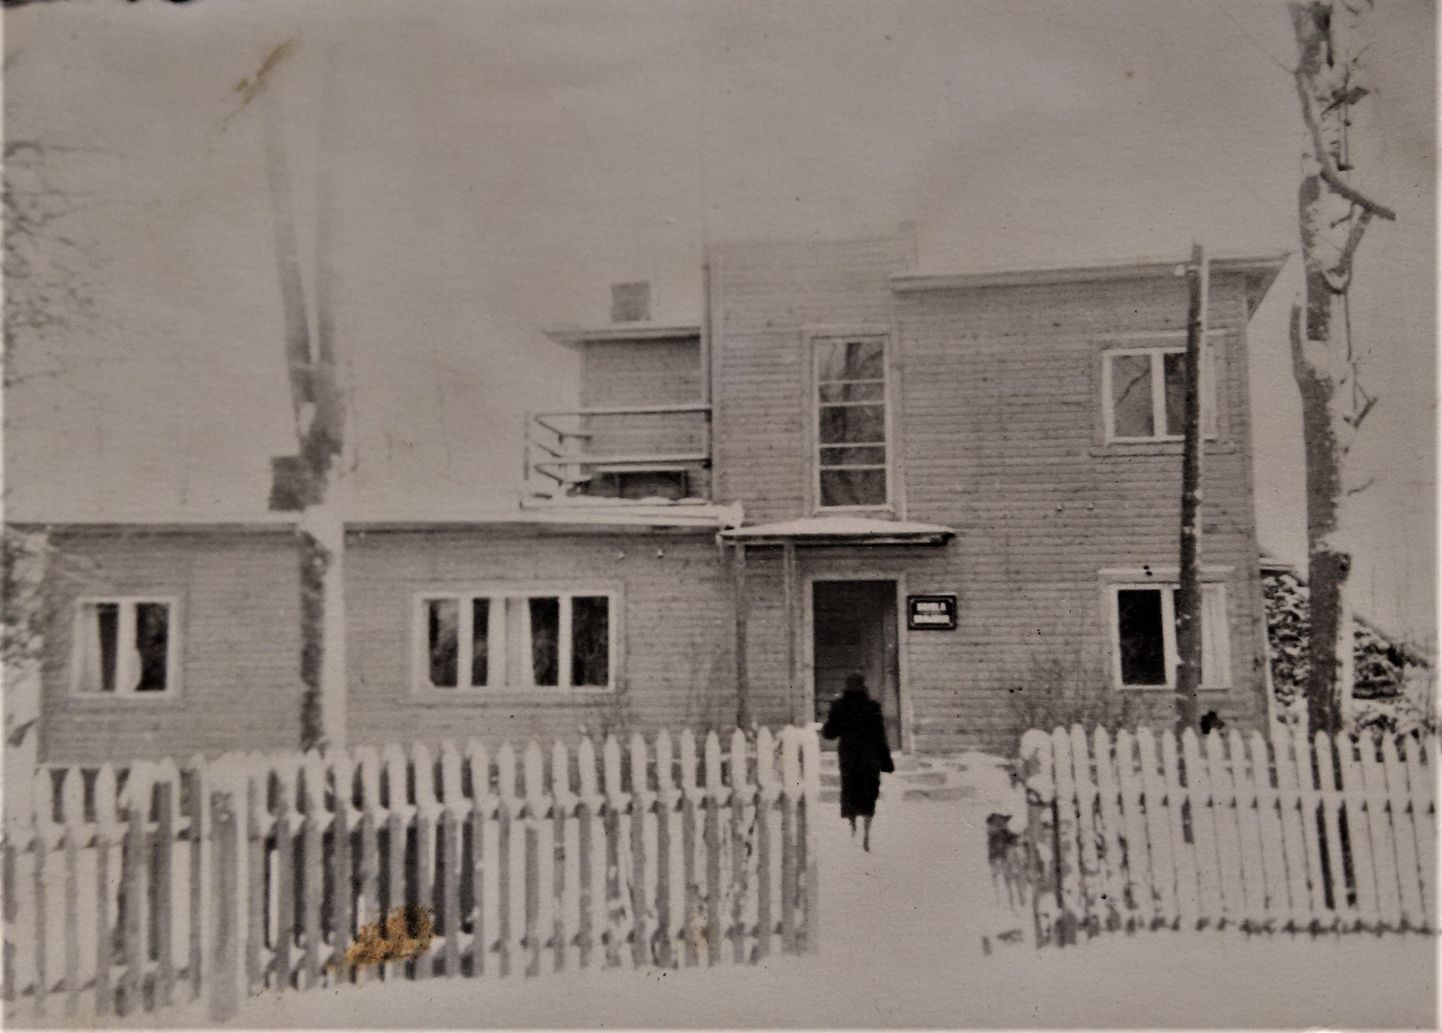 Sabolotnid − üks Iisaku põlistest suguvõsadest − elasid Iisaki talus. 1938. aastal valmis Sander Sabolotni vanaisal, taluperemees Voldemar Sabolotnil vana maja kõrval uus elumaja, mis oli sellel ajal tõenäoliselt kõige moodsam maja Iisakus. Majas oli veetorustik ja kraanist sai nii külma kui kuuma vett. Samuti oli olemas ventilatsioonisüsteem köögi ja tualettruumide õhu värskendamiseks. Lauda katusel oli tuulerootor, mis pumpas kaevust lauta vett. Voldemar Sabolotni oli Iisakus suurema kaliibriga ärimees, talle kuulusid saeveski, mitu autot, põllu- ja metsamaad. "Vanaisa oli väga ettevõtlik ja ajas paljusid asju korraga. Maja tegelikult lõpuni valmis ei saanudki − vooder jäi ümber panemata. Raha oli vaja investeerida tähtsamatesse kohtadesse. Vanaisa küüditati 1941. aastal, vanaema ja minu isa küüditati pärast sõda. Siis tuli sinna majja haigla. Veel hiljuti oli seal hooldekodu, aga nüüd on maja juba pool aastat tühjana seisnud ja uusi omanikke oodanud," räägib Sander Sabolotni.